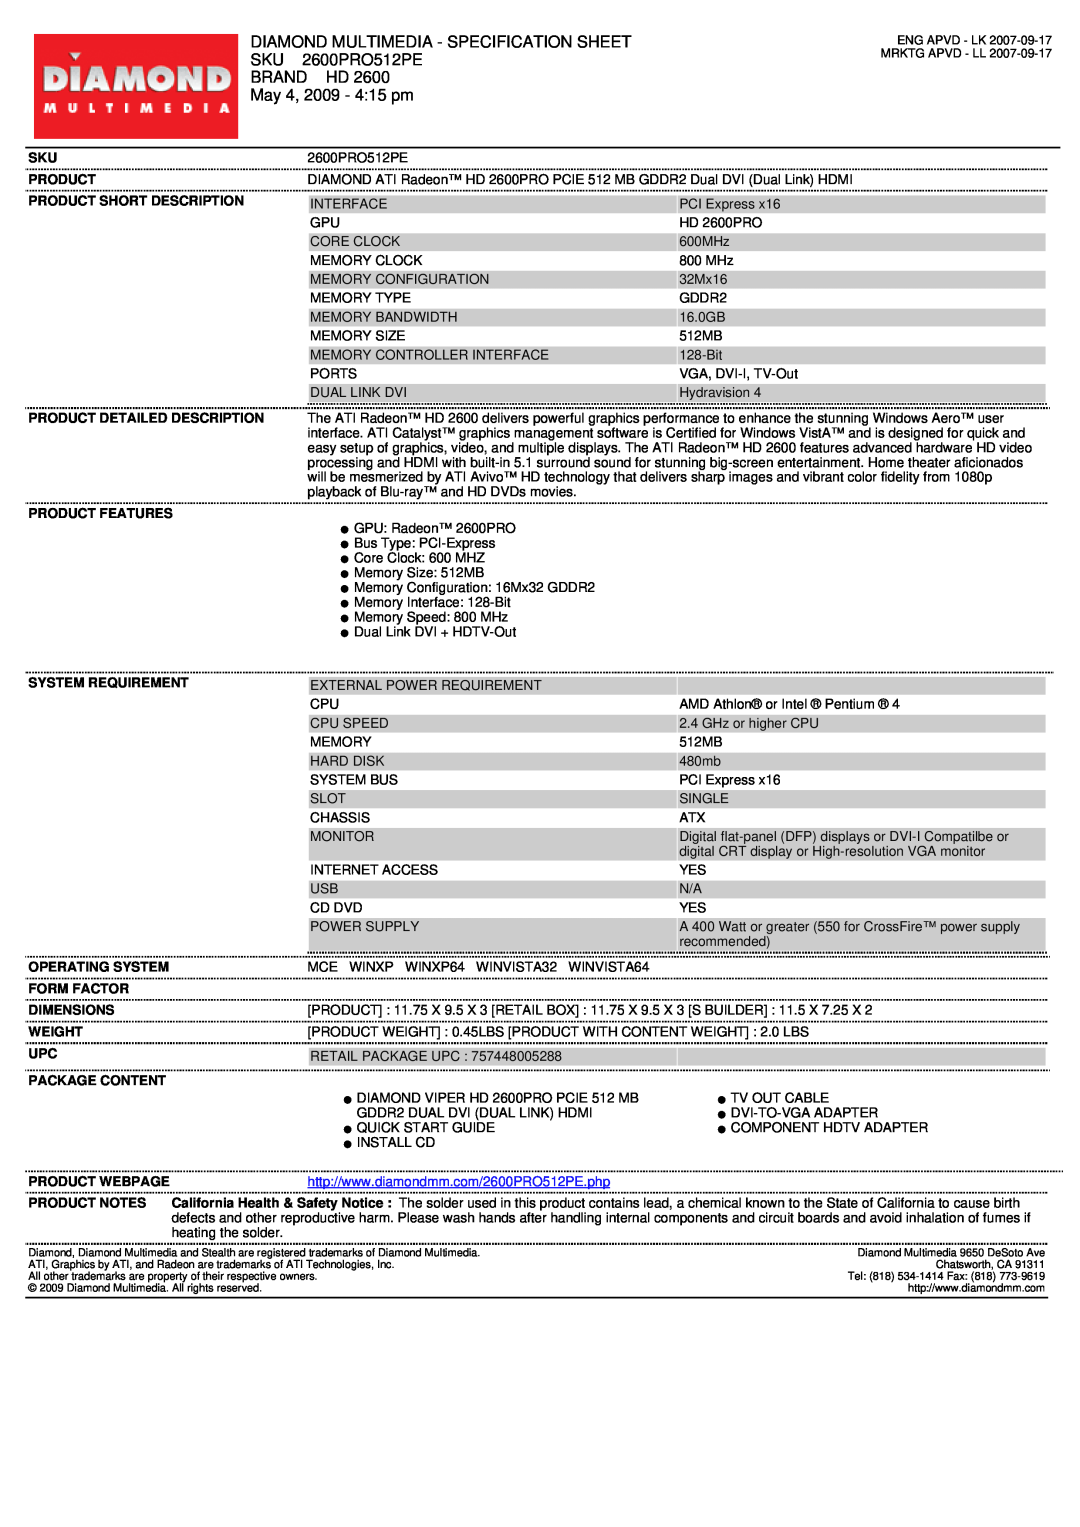 Diamond Multimedia 2600PRO512PE specifications Diamond Multimedia - Specification Sheet, Brand Hd, May 4, 2009 - 415 pm 